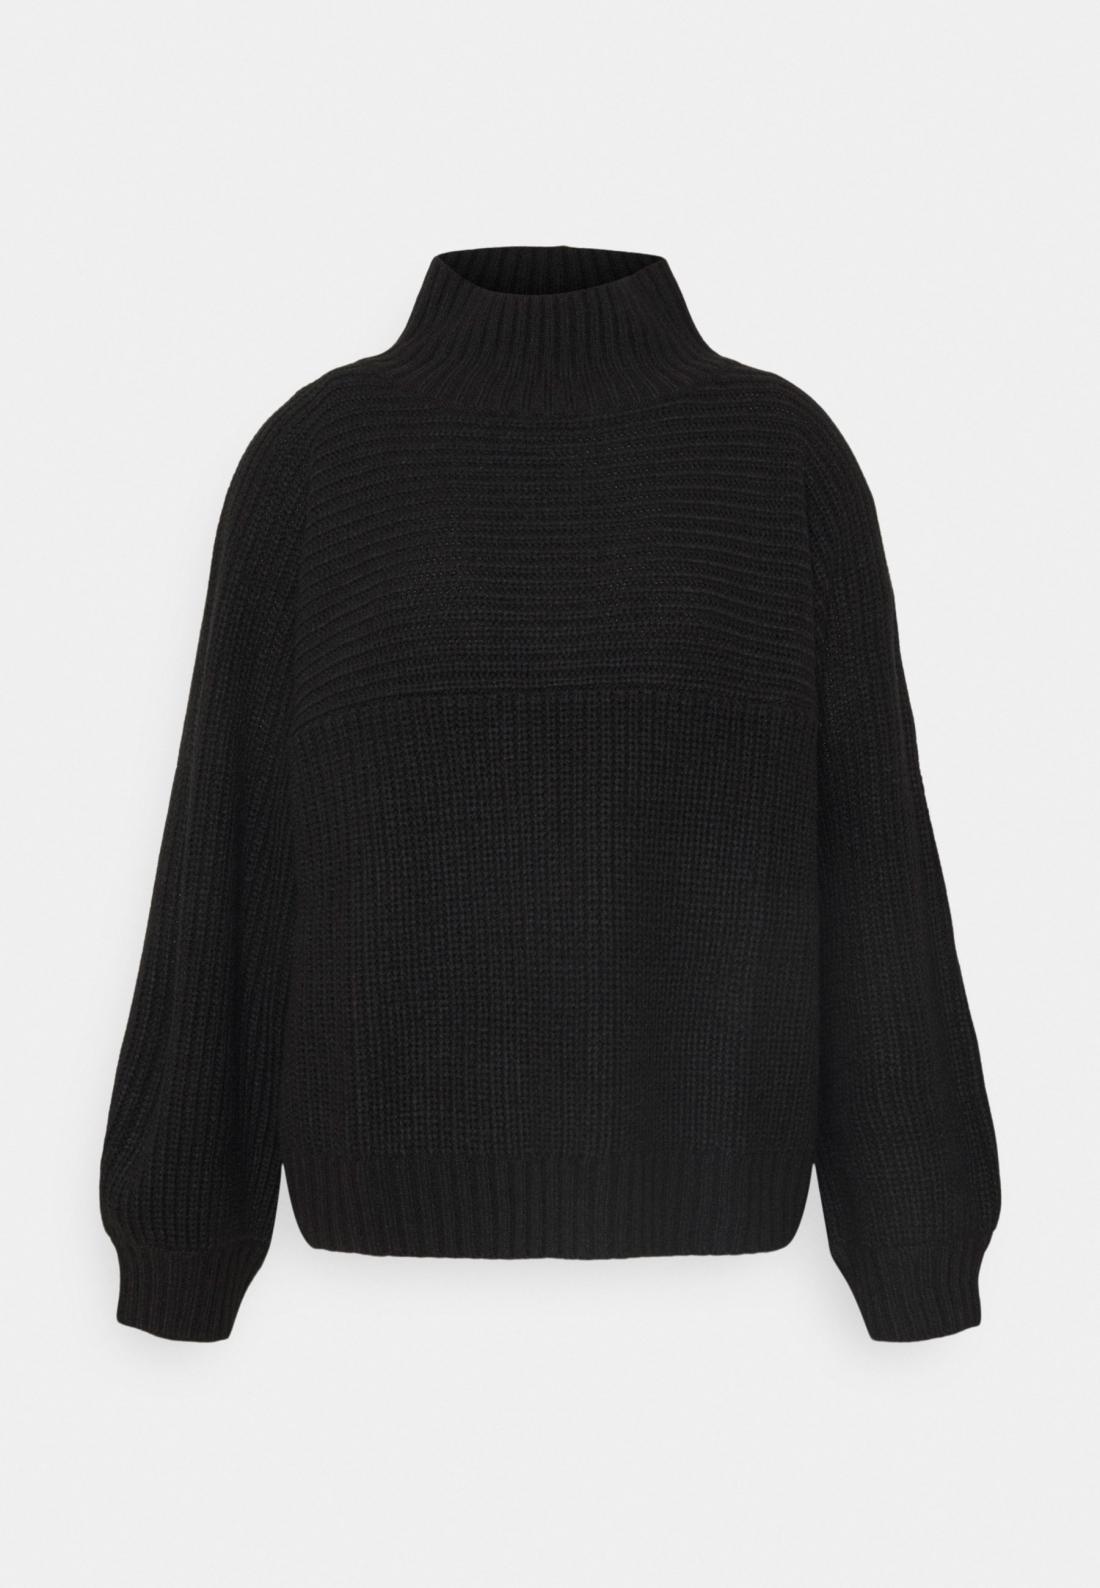 Črn pulover, Zalando, Monki, 25,00€